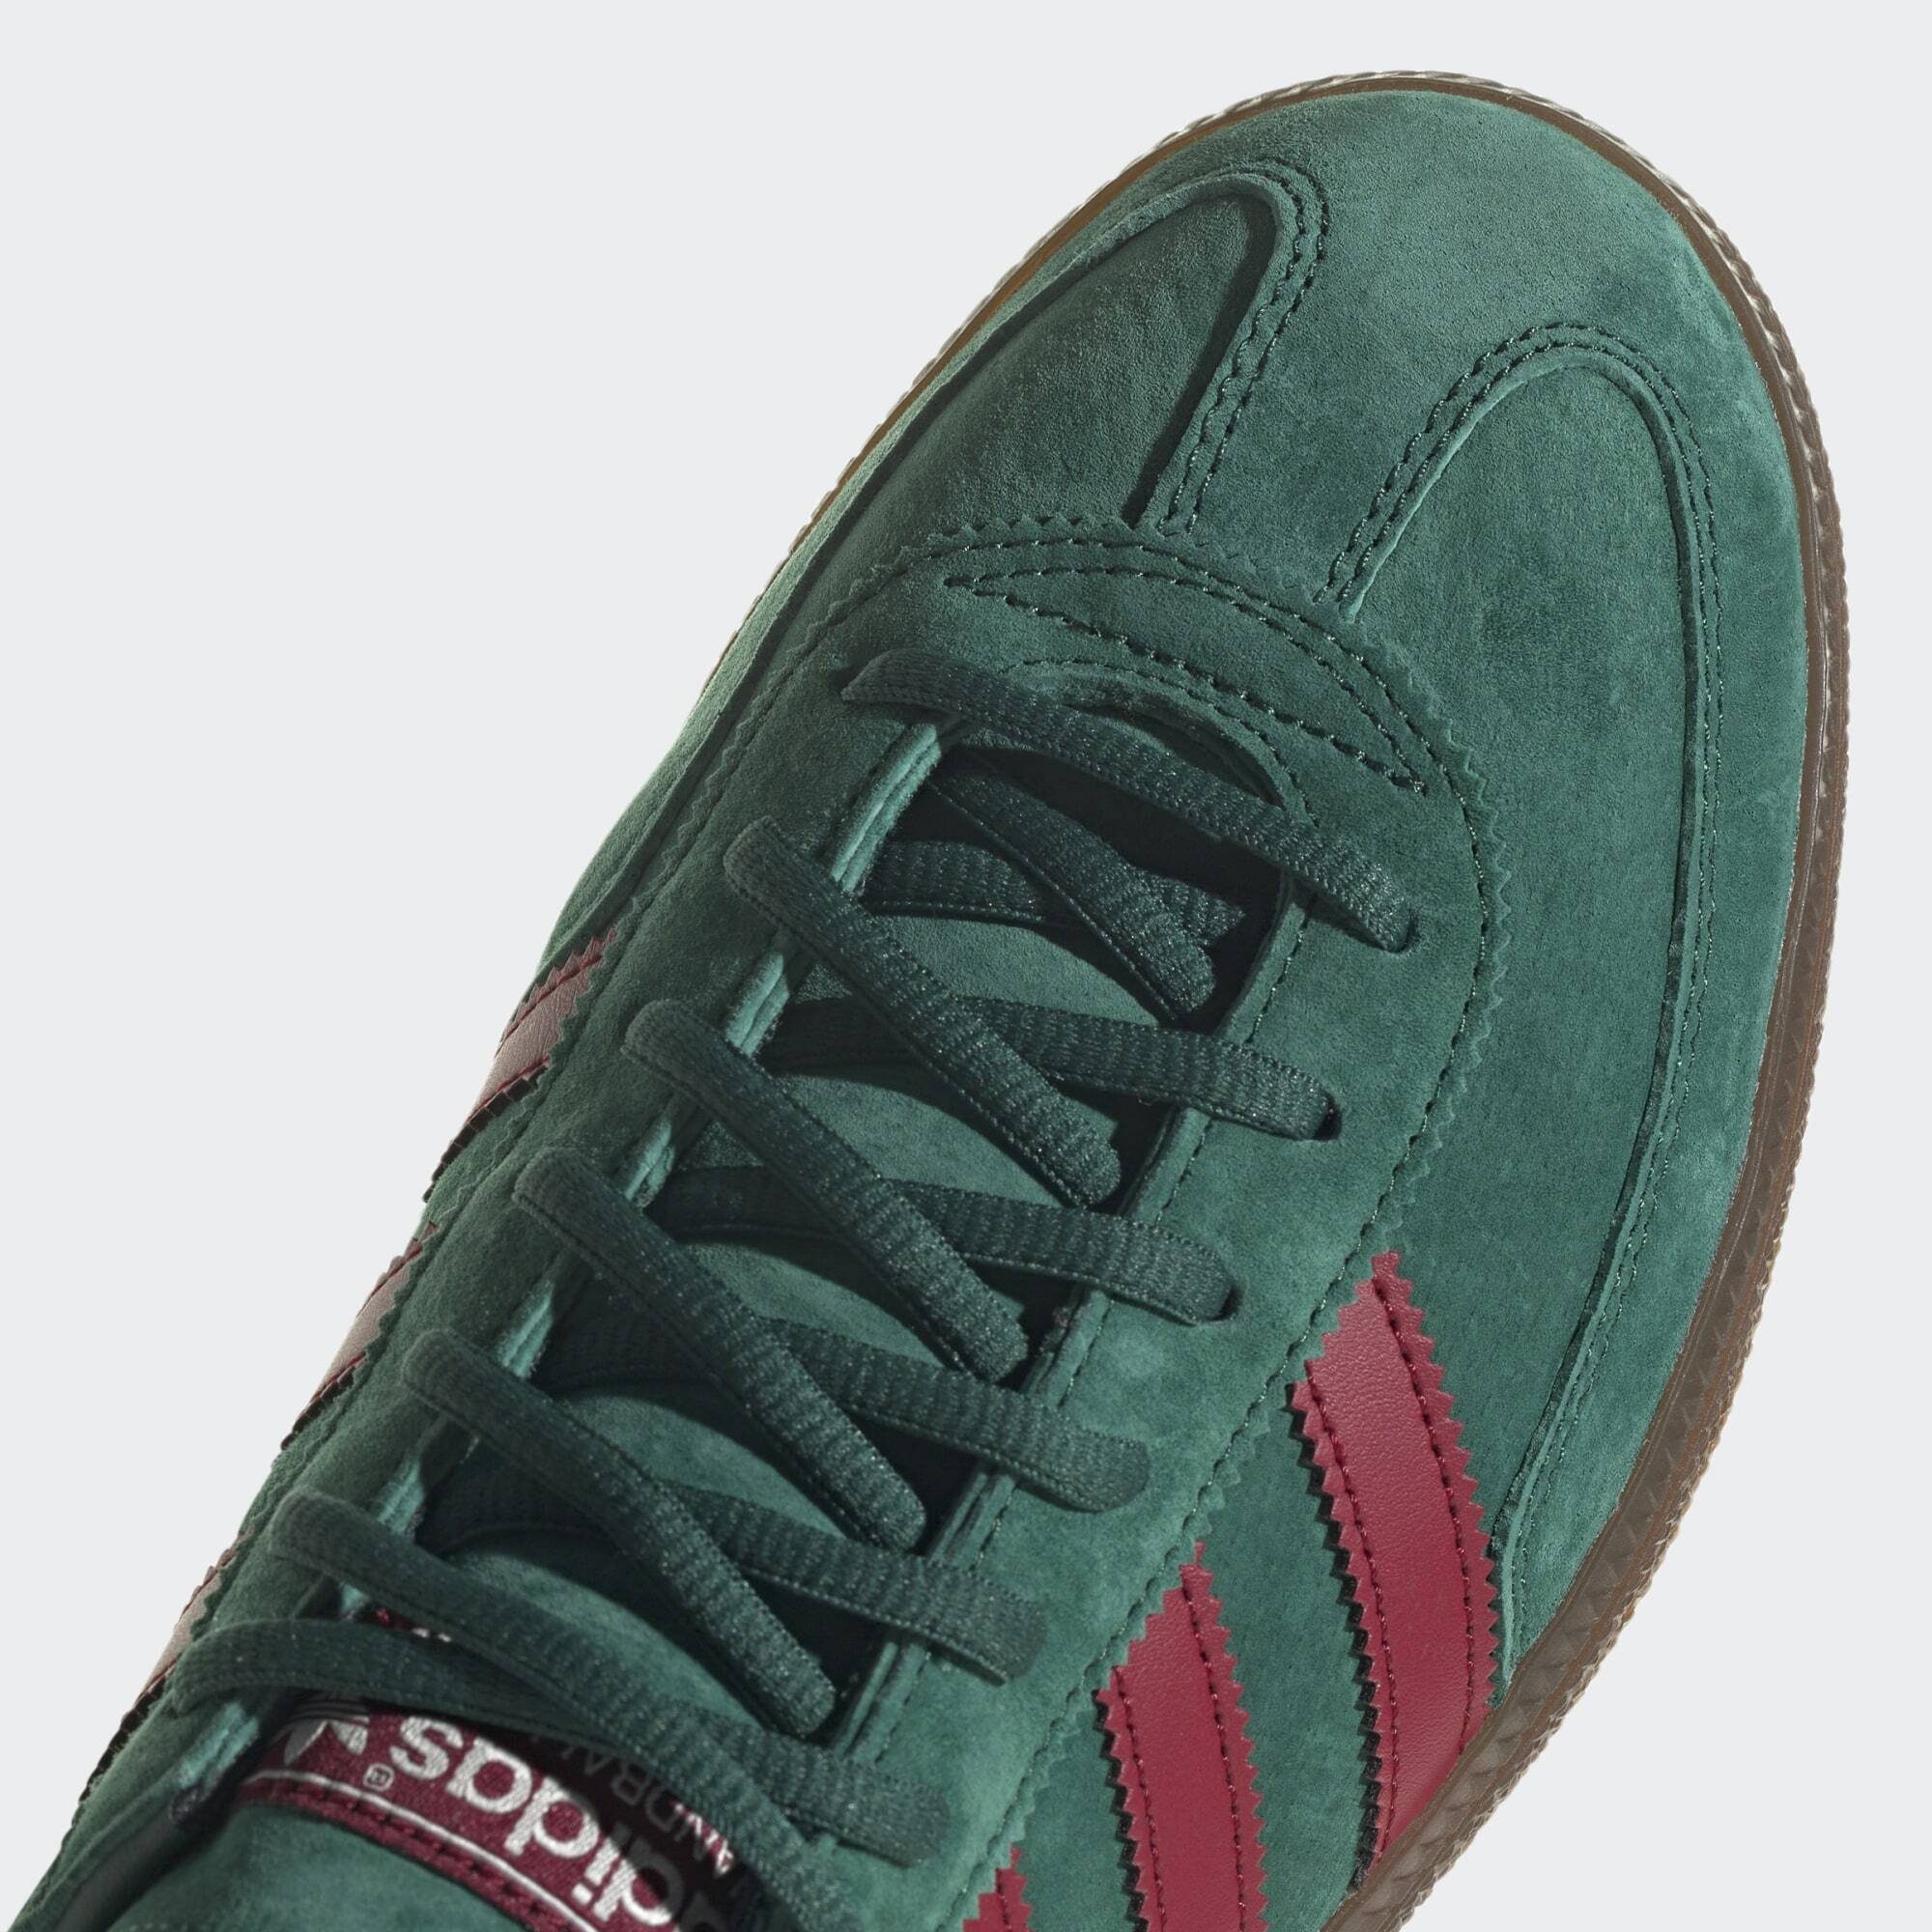 Originals Burgundy Gum SPEZIAL Collegiate Sneaker Green SCHUH / Collegiate / adidas HANDBALL